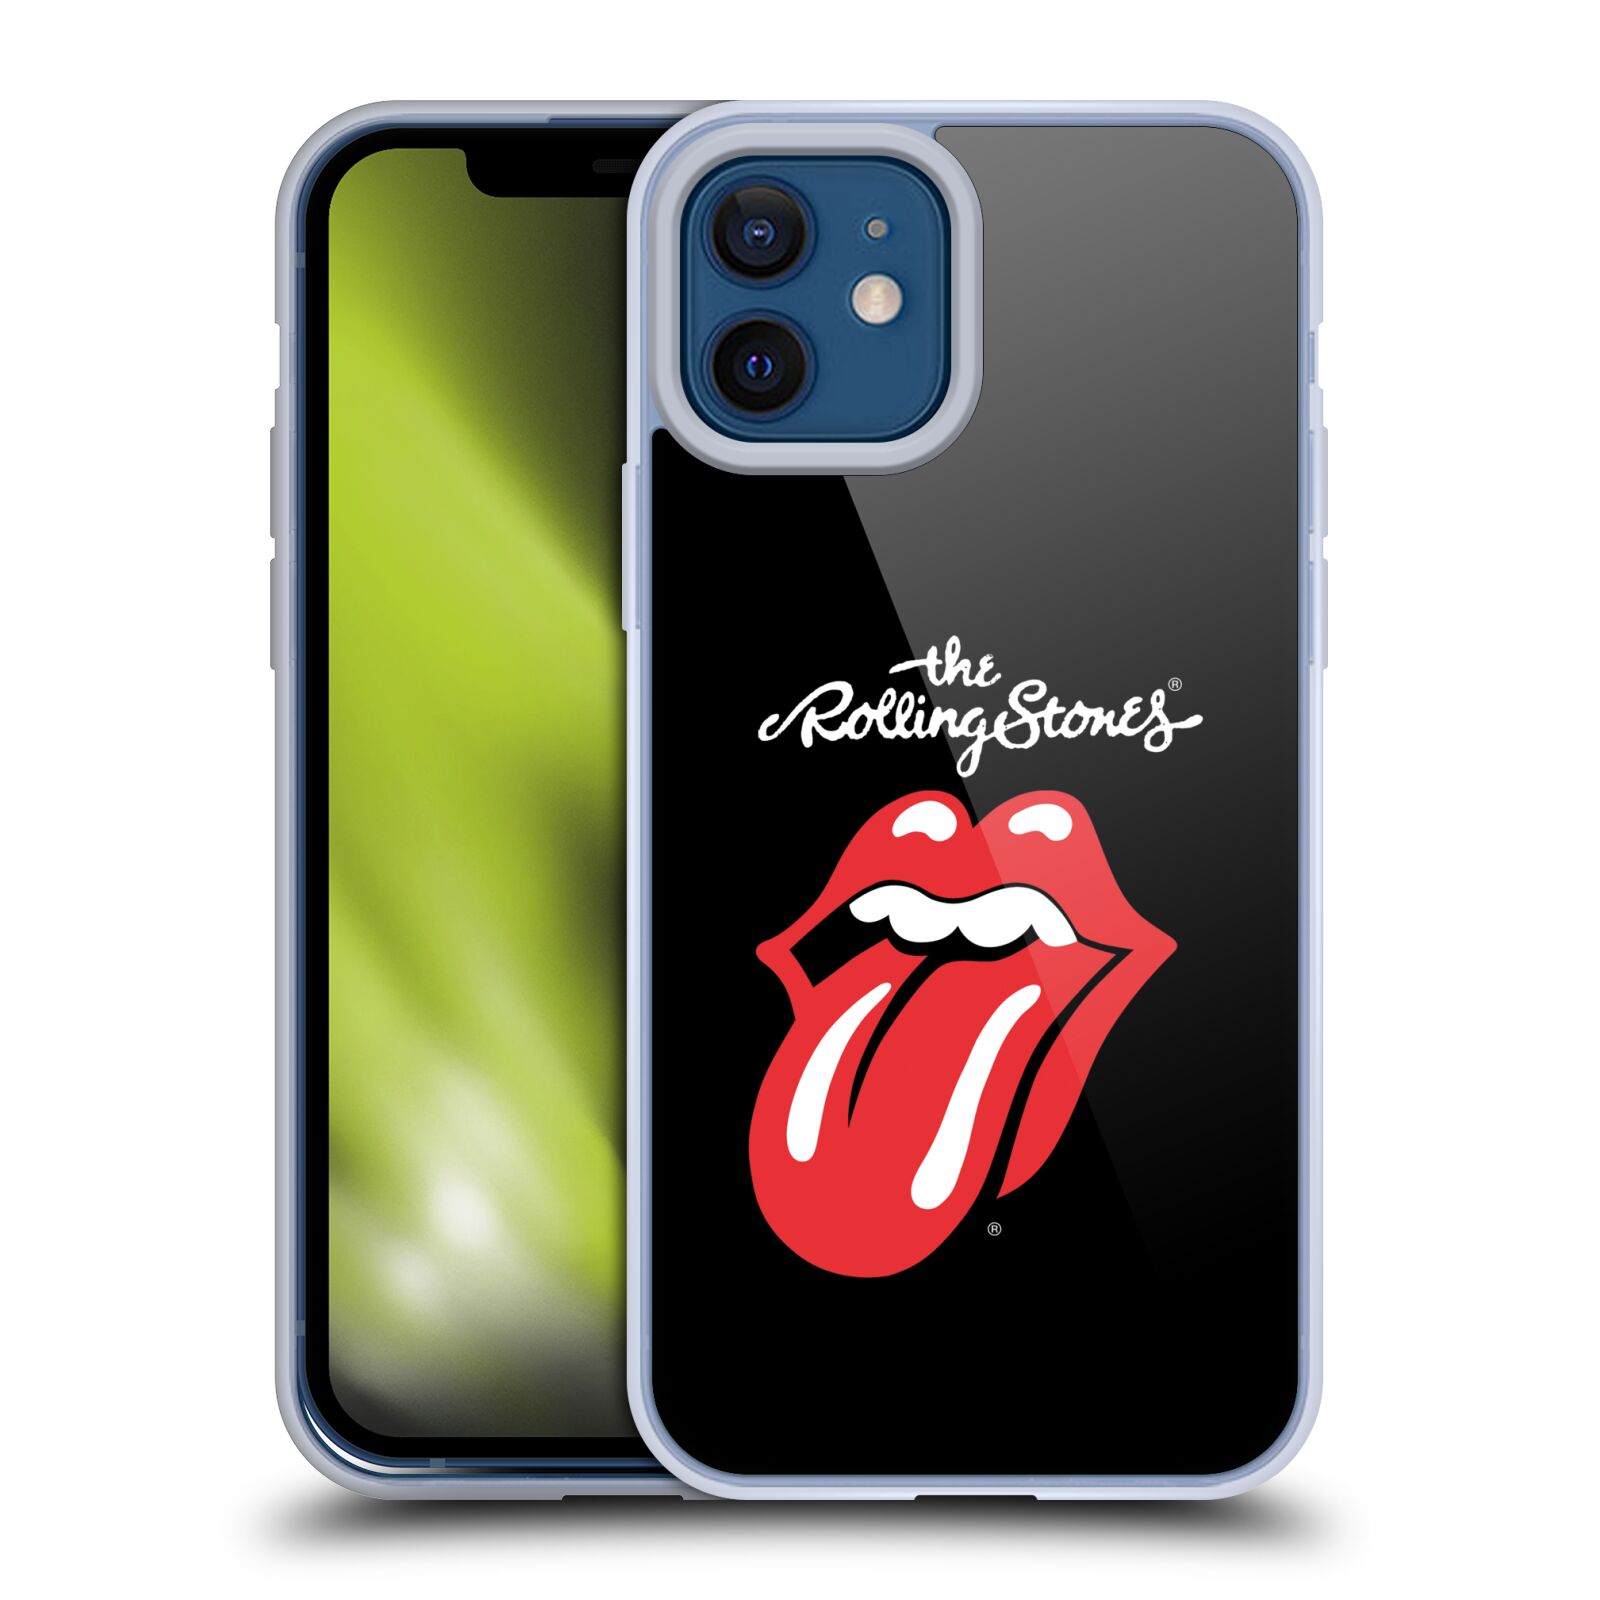 Silikonové pouzdro na mobil Apple iPhone 12 / 12 Pro - Head Case - The Rolling Stones - Classic Lick (Silikonový kryt, obal, pouzdro na mobilní telefon Apple iPhone 12 / Apple iPhone 12 Pro (6,1") s motivem The Rolling Stones - Classic Lick)